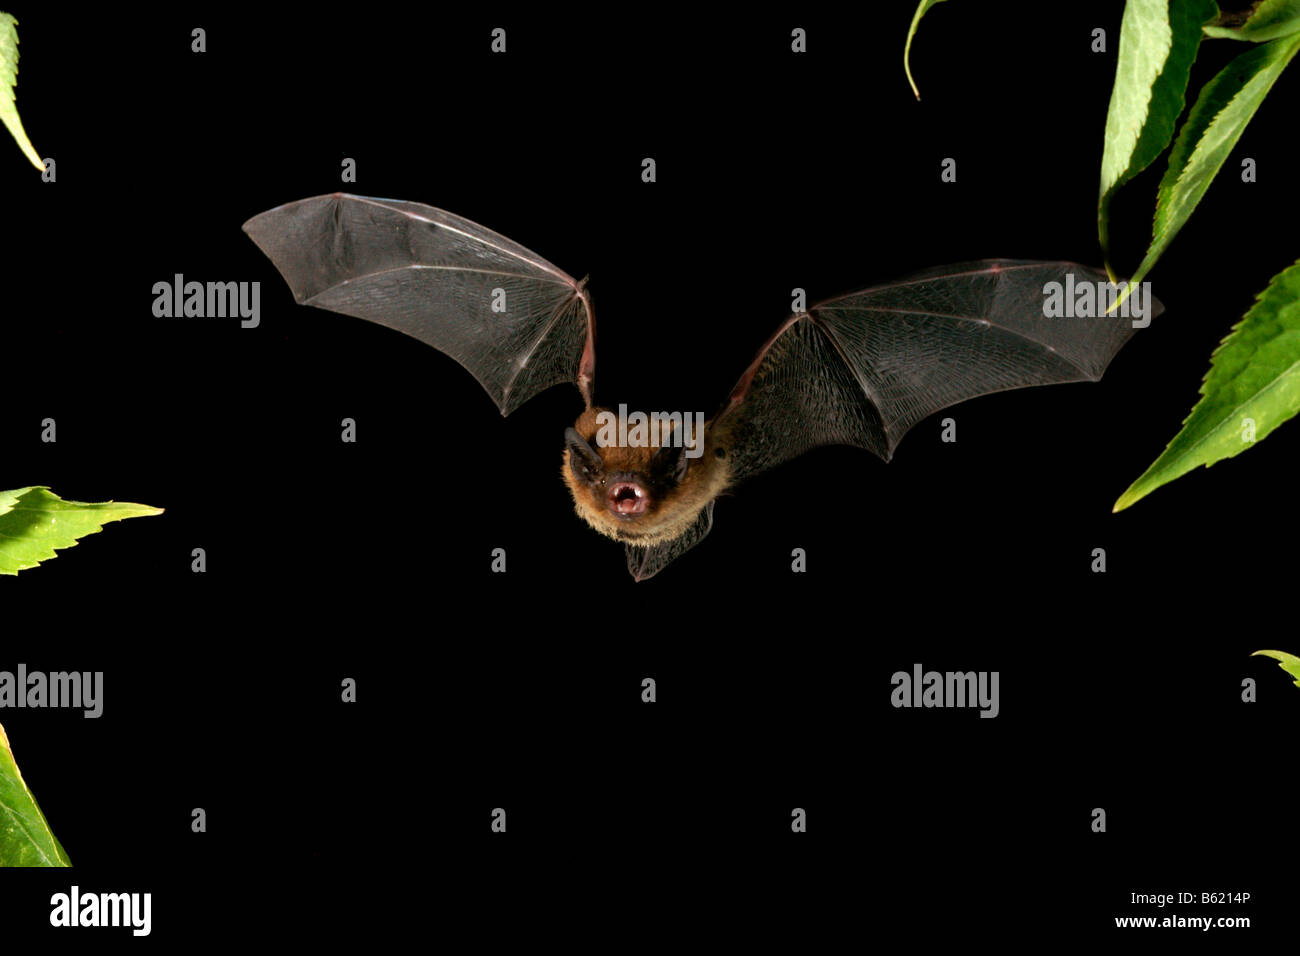 Nathusius' Pipistrelle (Pipistrellus nathusii) Stock Photo